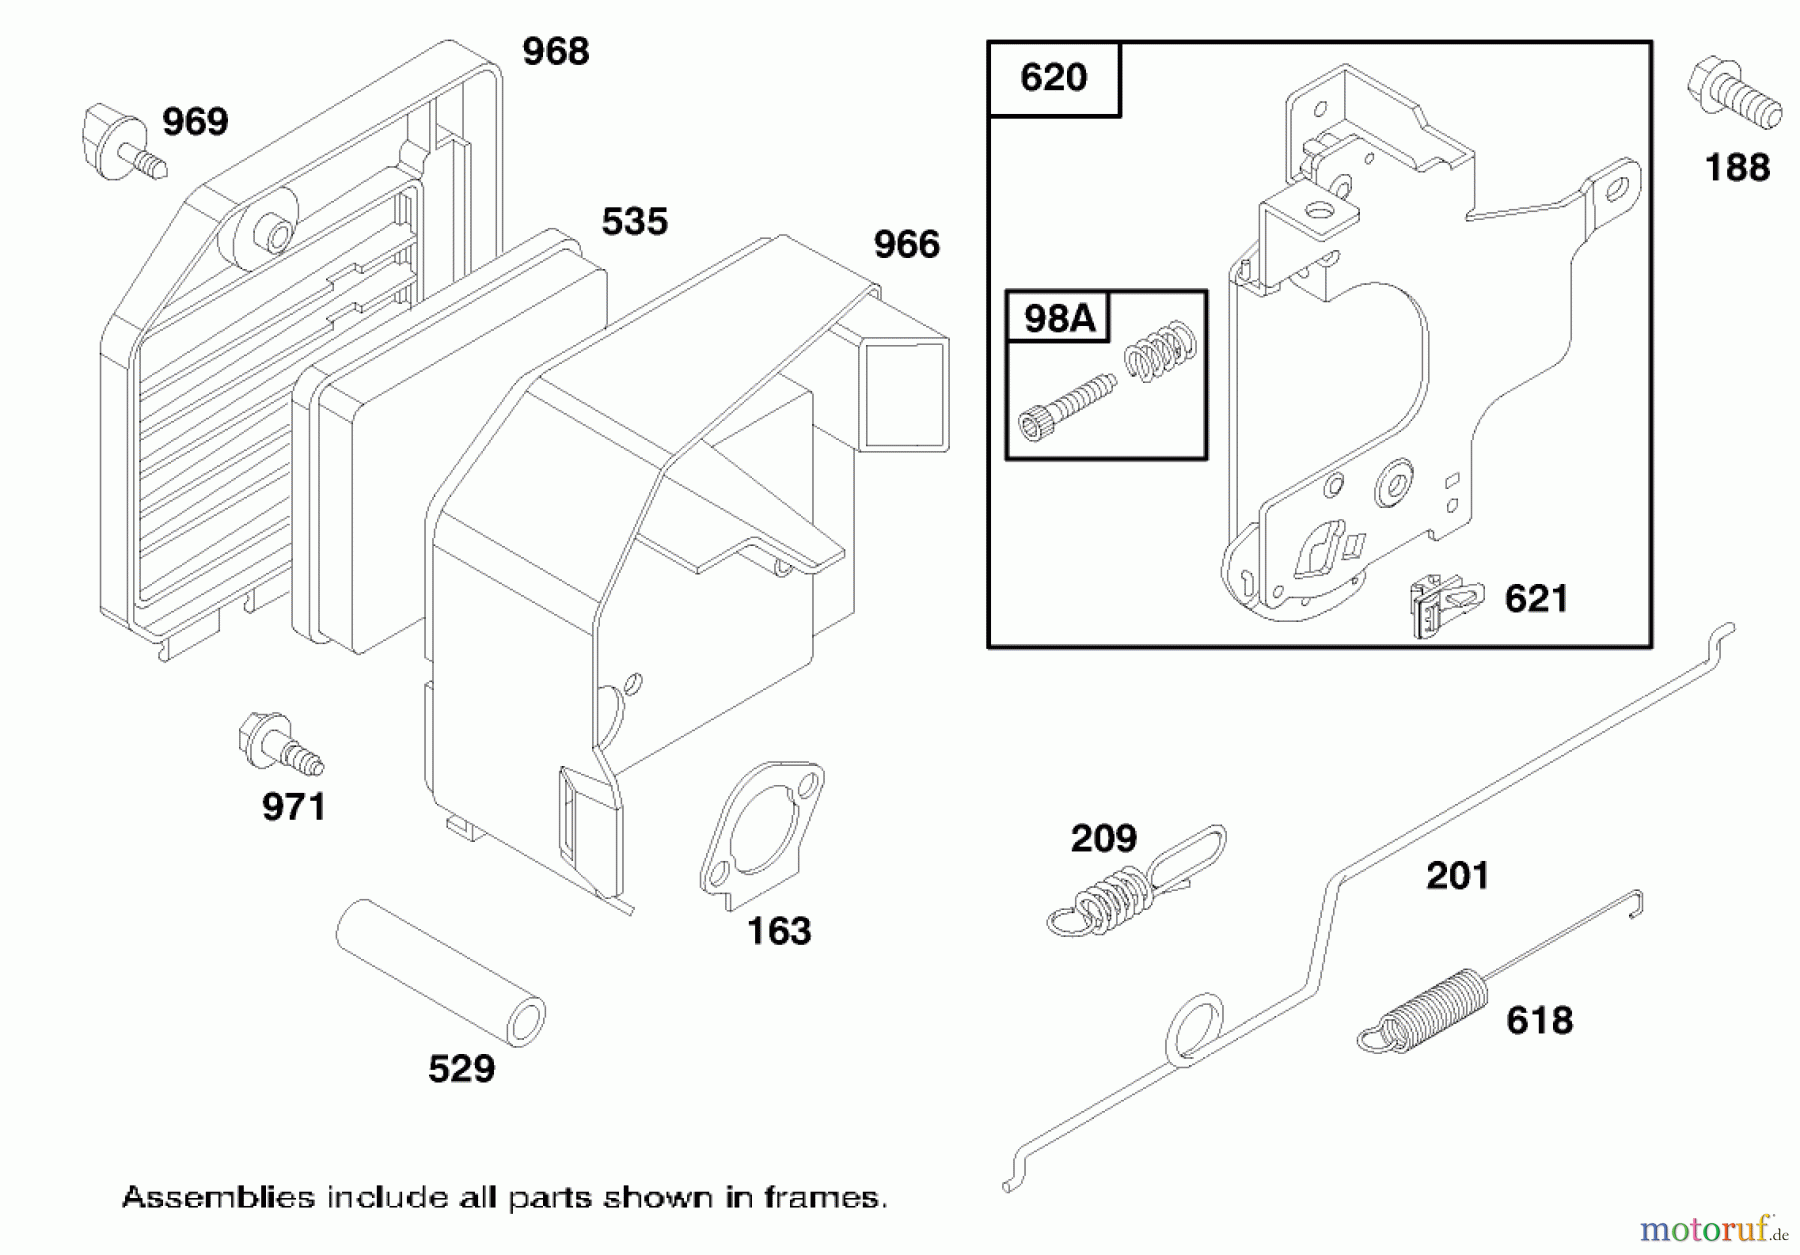  Toro Neu Mowers, Walk-Behind Seite 1 20474 - Toro Super Recycler Lawnmower, 1996 (6900001-6999999) ENGINE GTS 150 #4